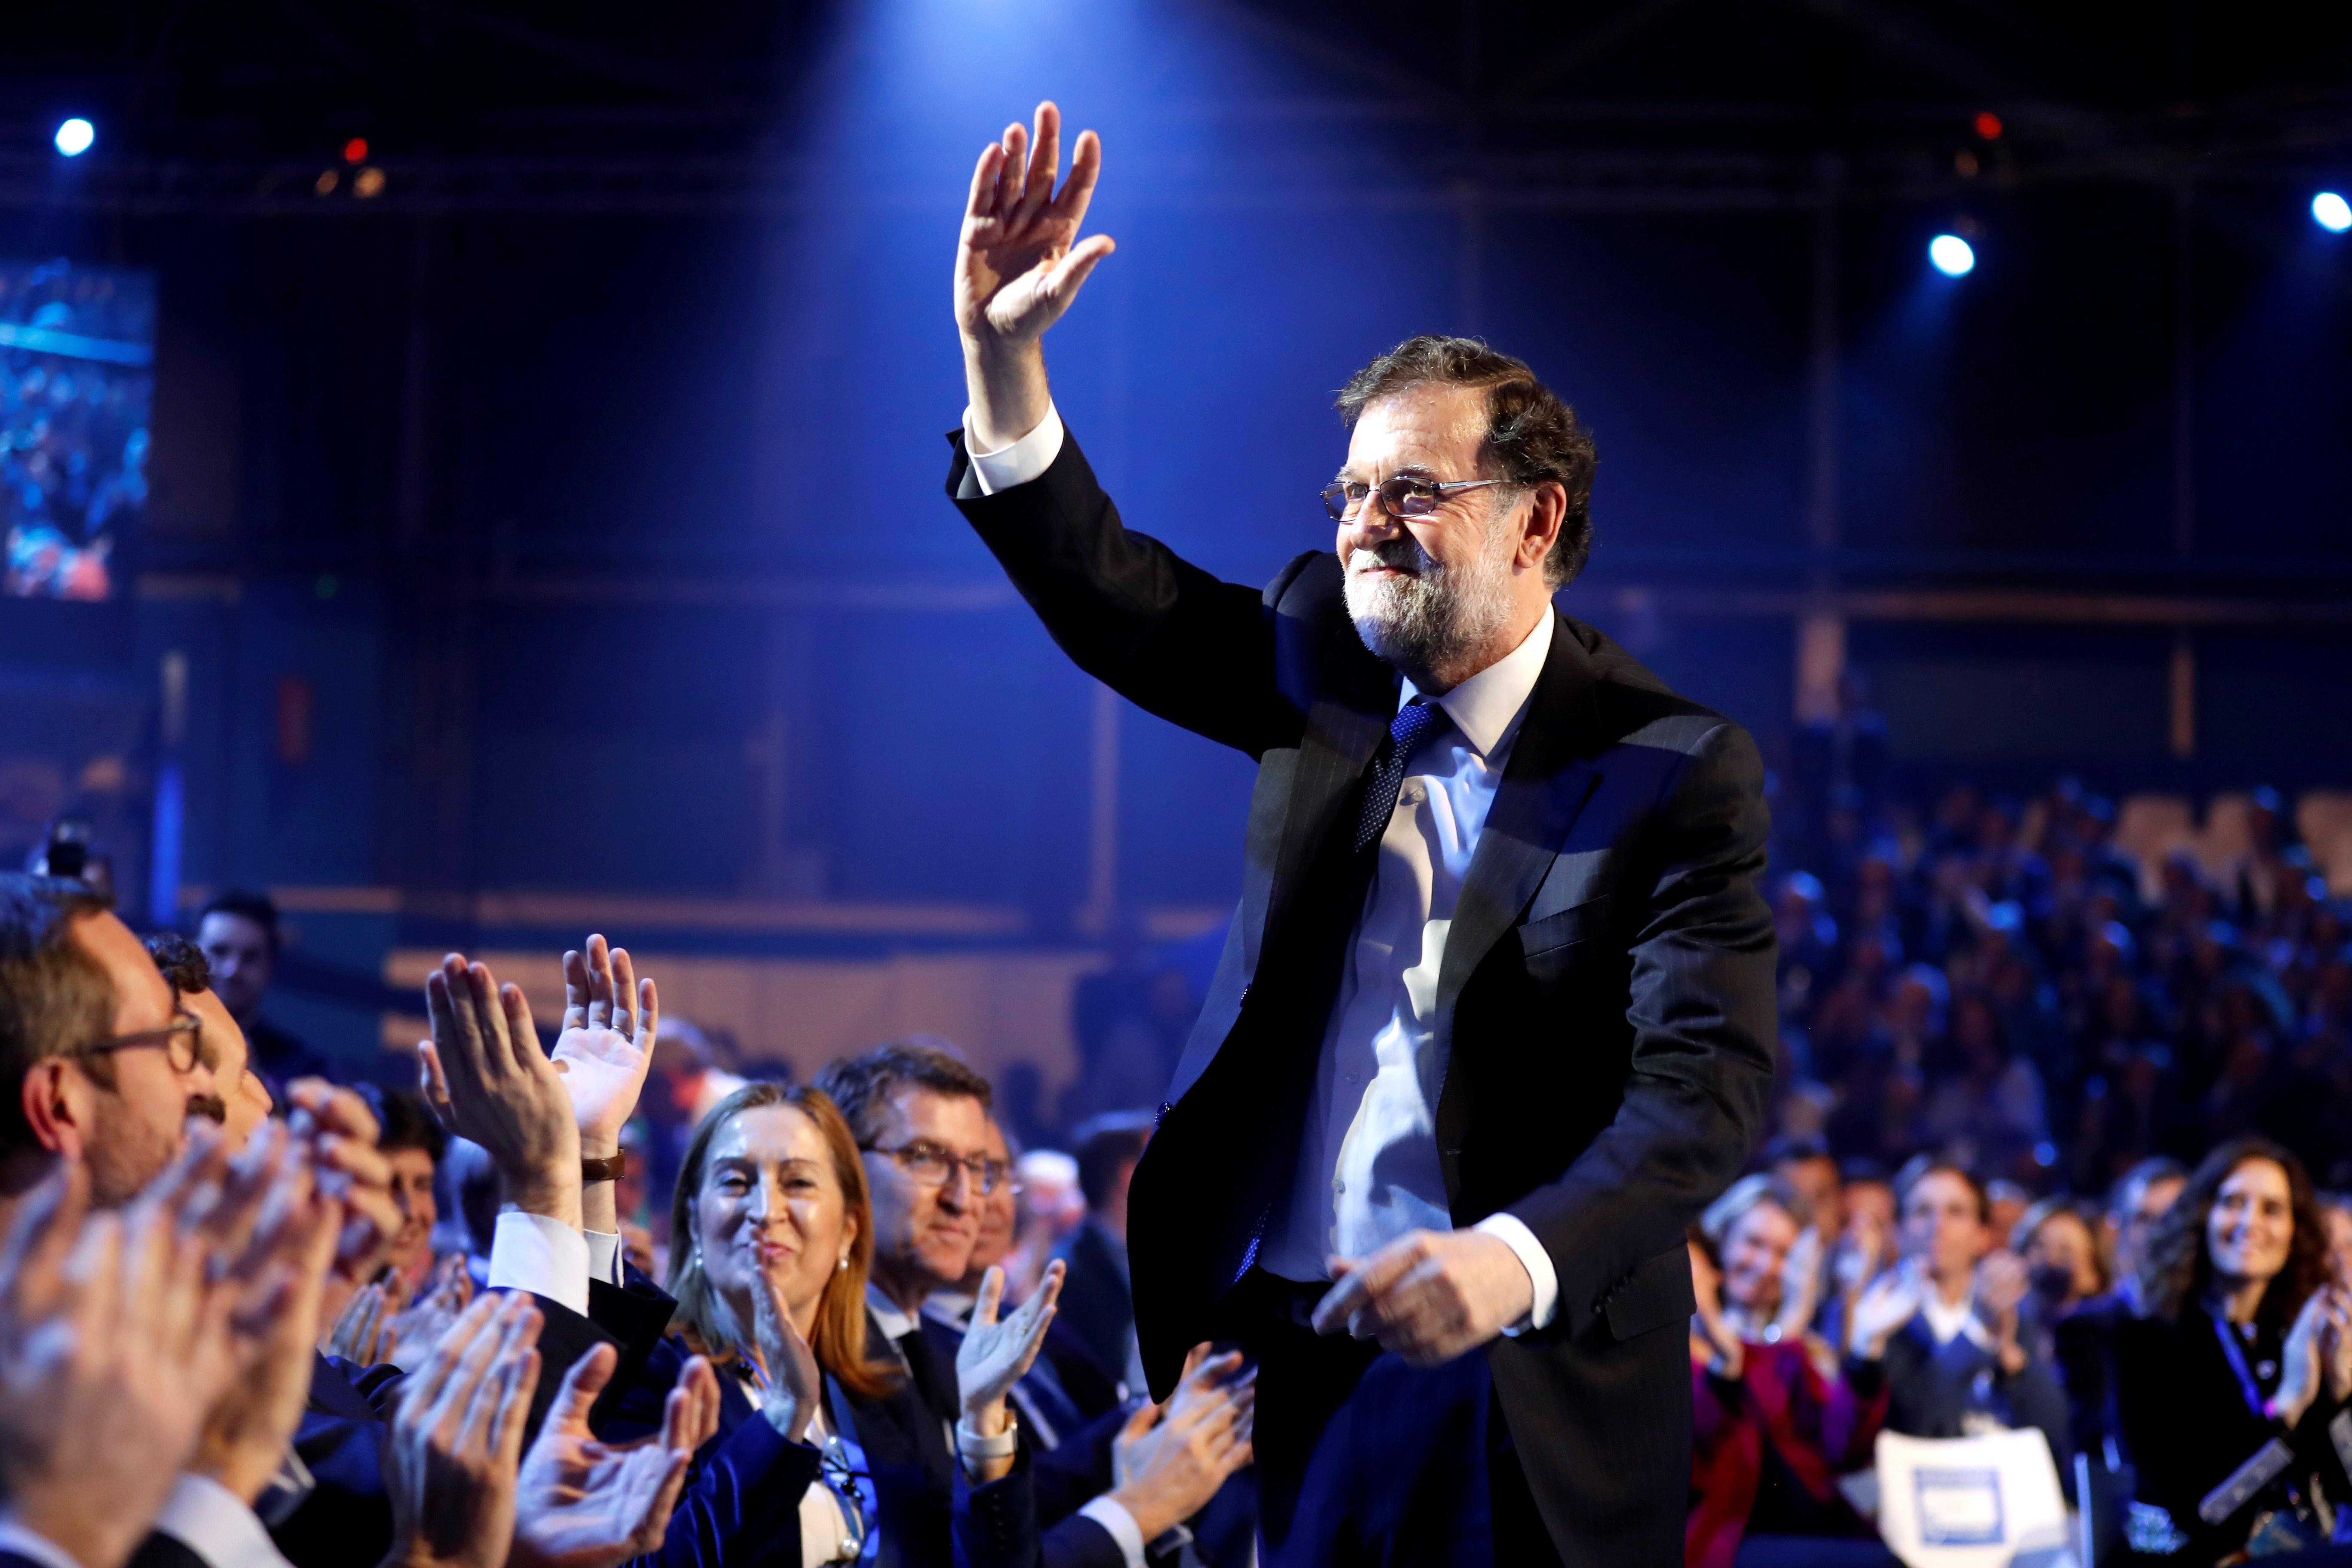 Rajoy insta al PP a girar al centro frente a los "doctrinarios"